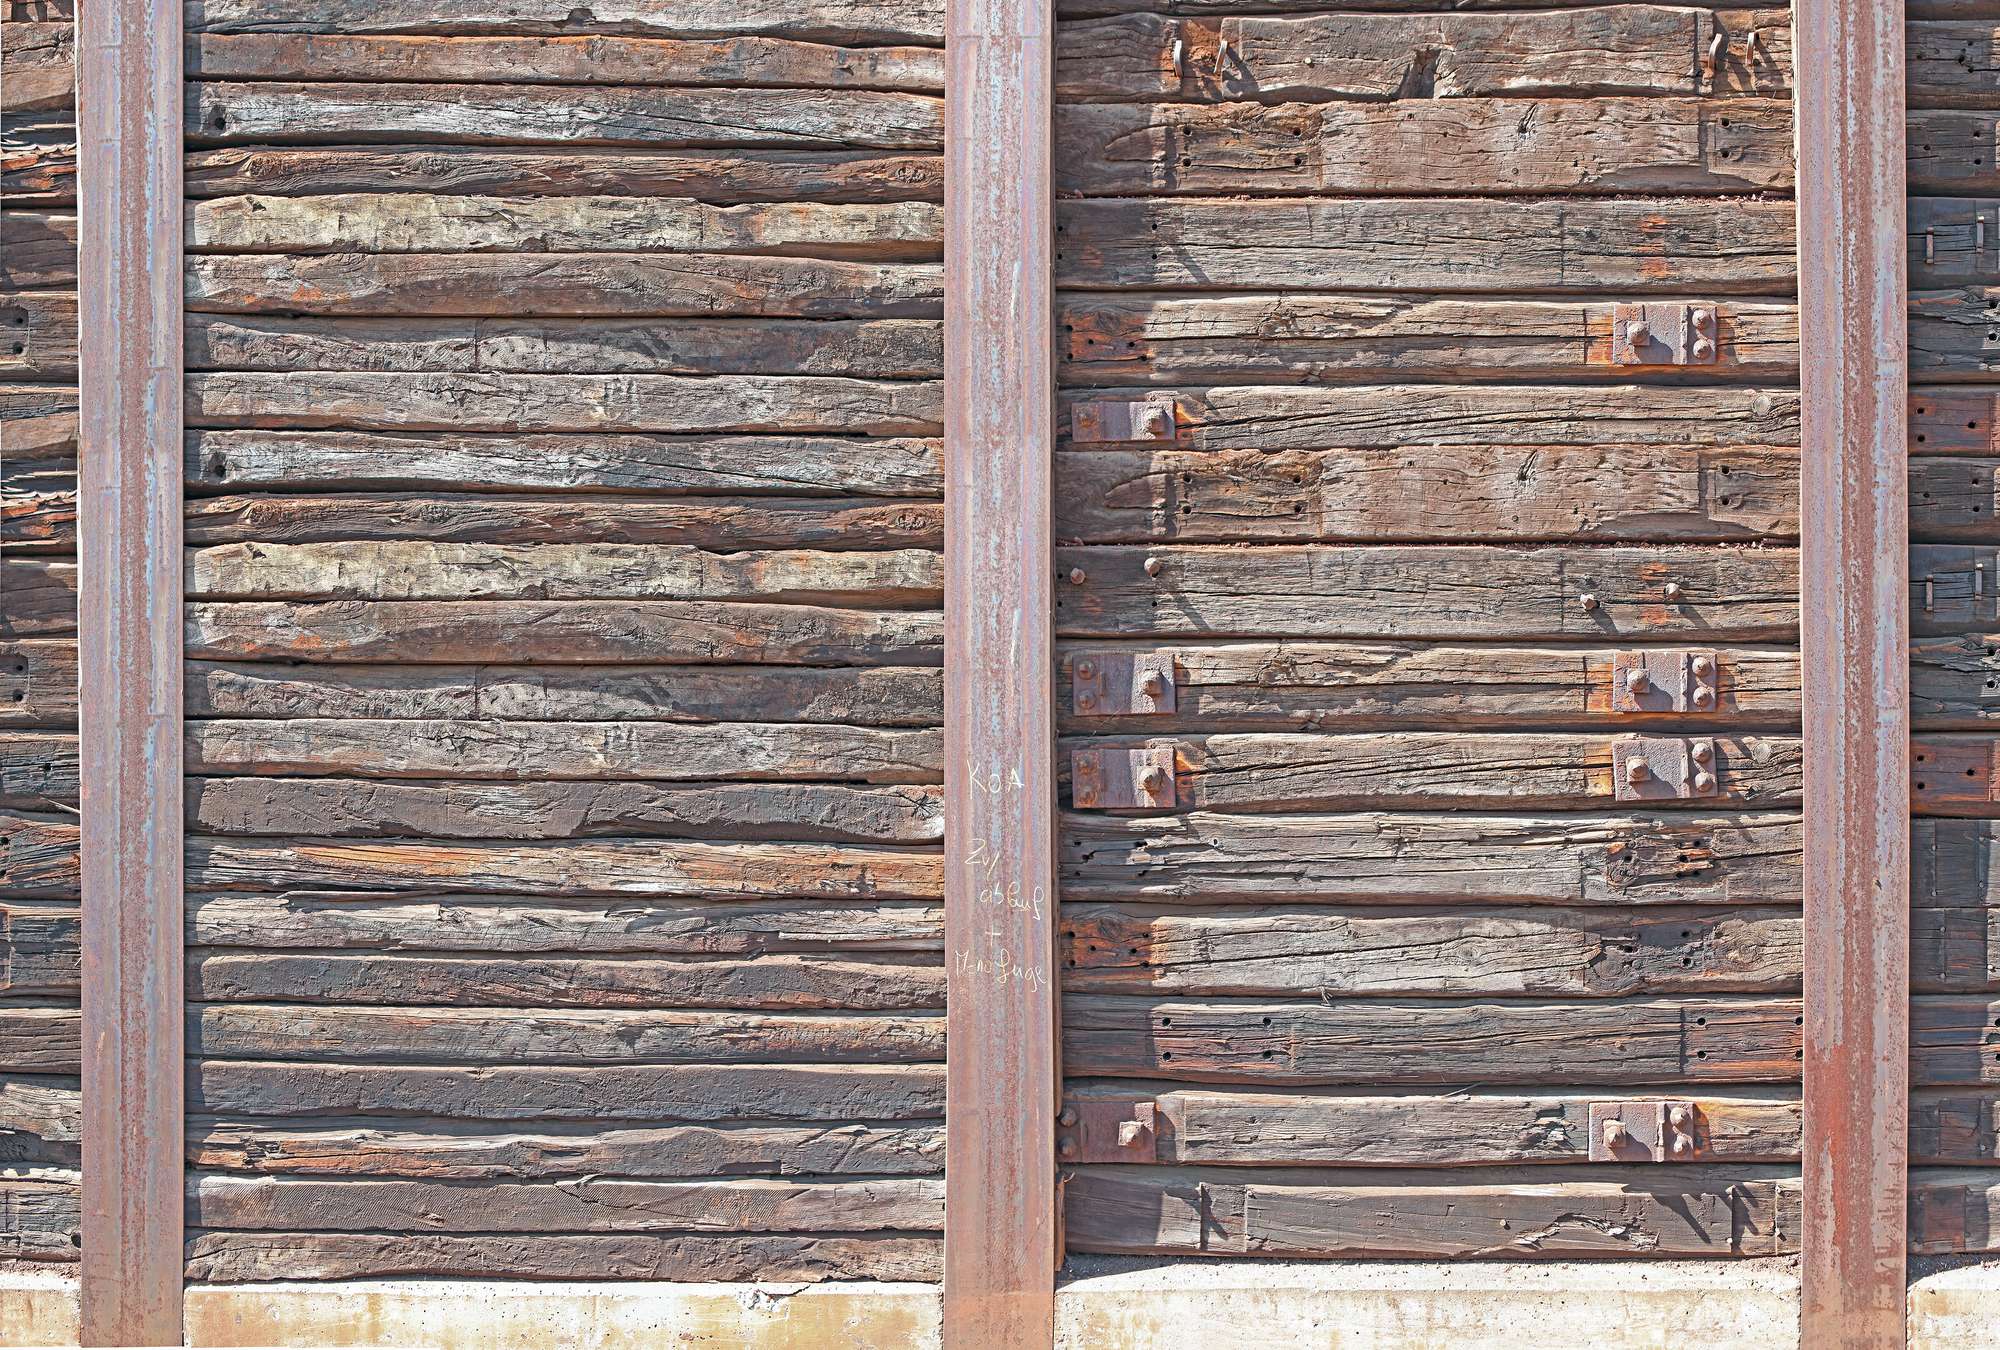             Fotobehang met rustieke houten planken tussen stalen liggers
        